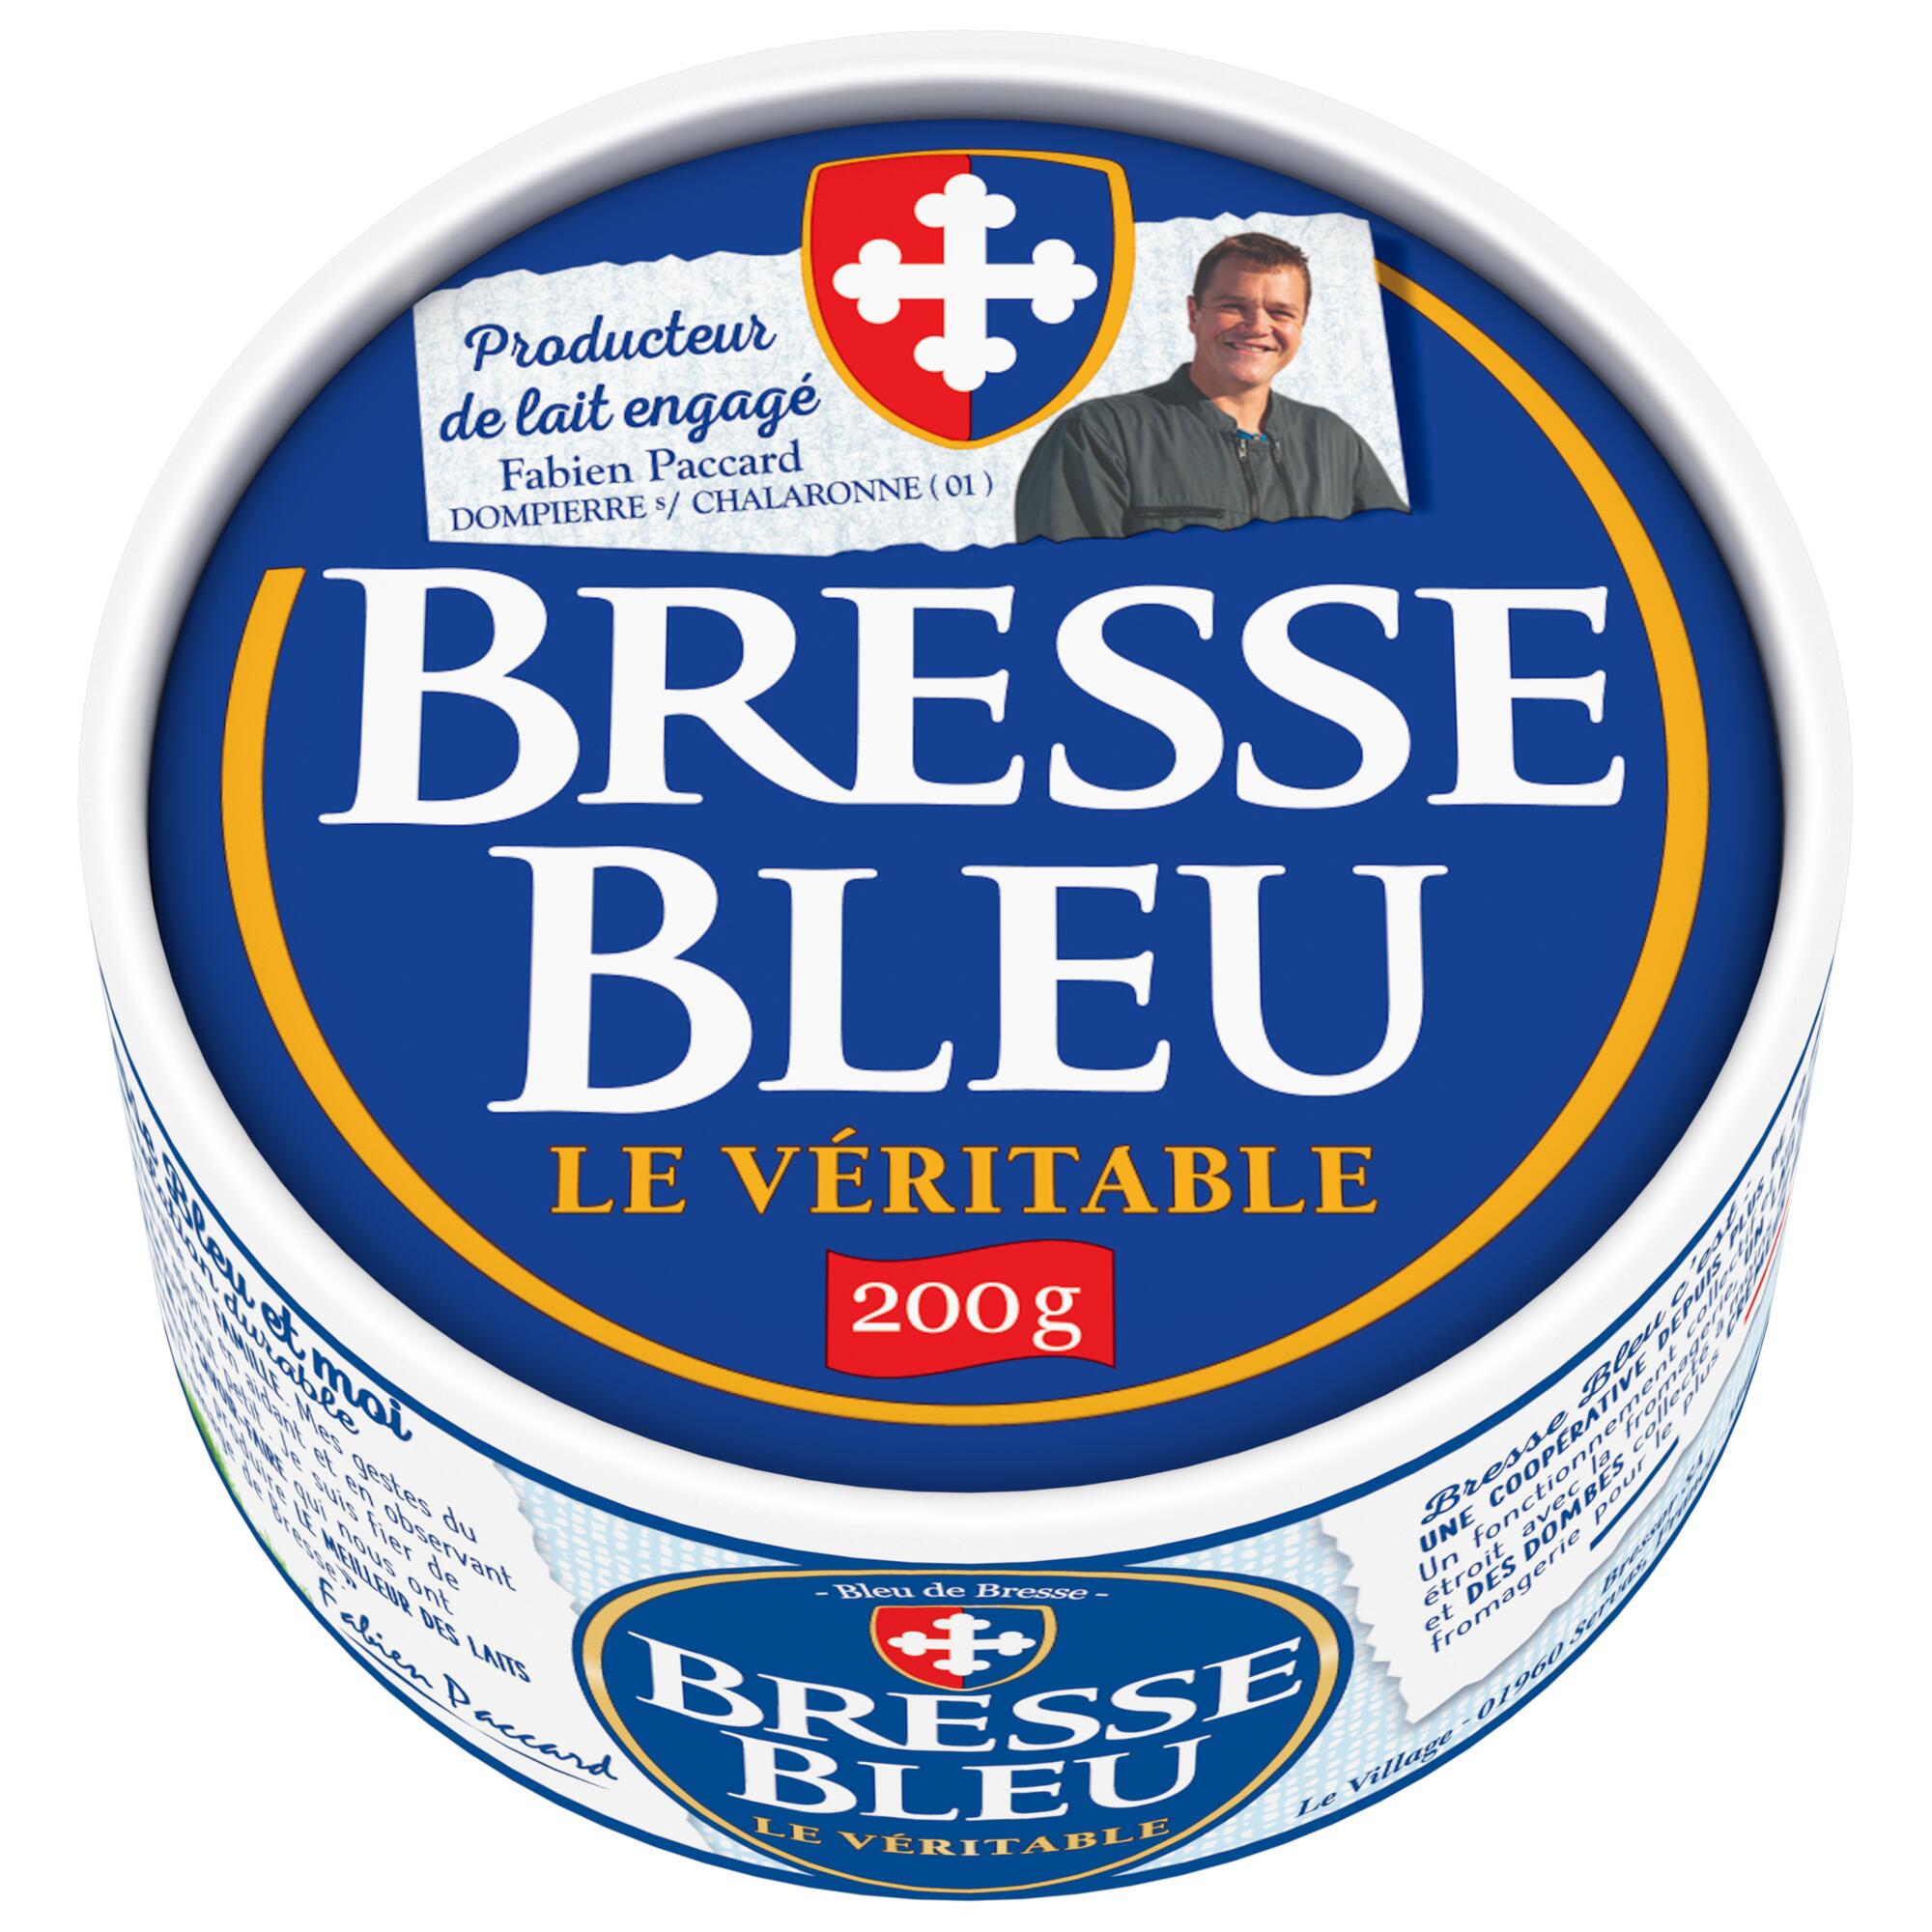 Un Bresse Bleu Le Véritable 200g